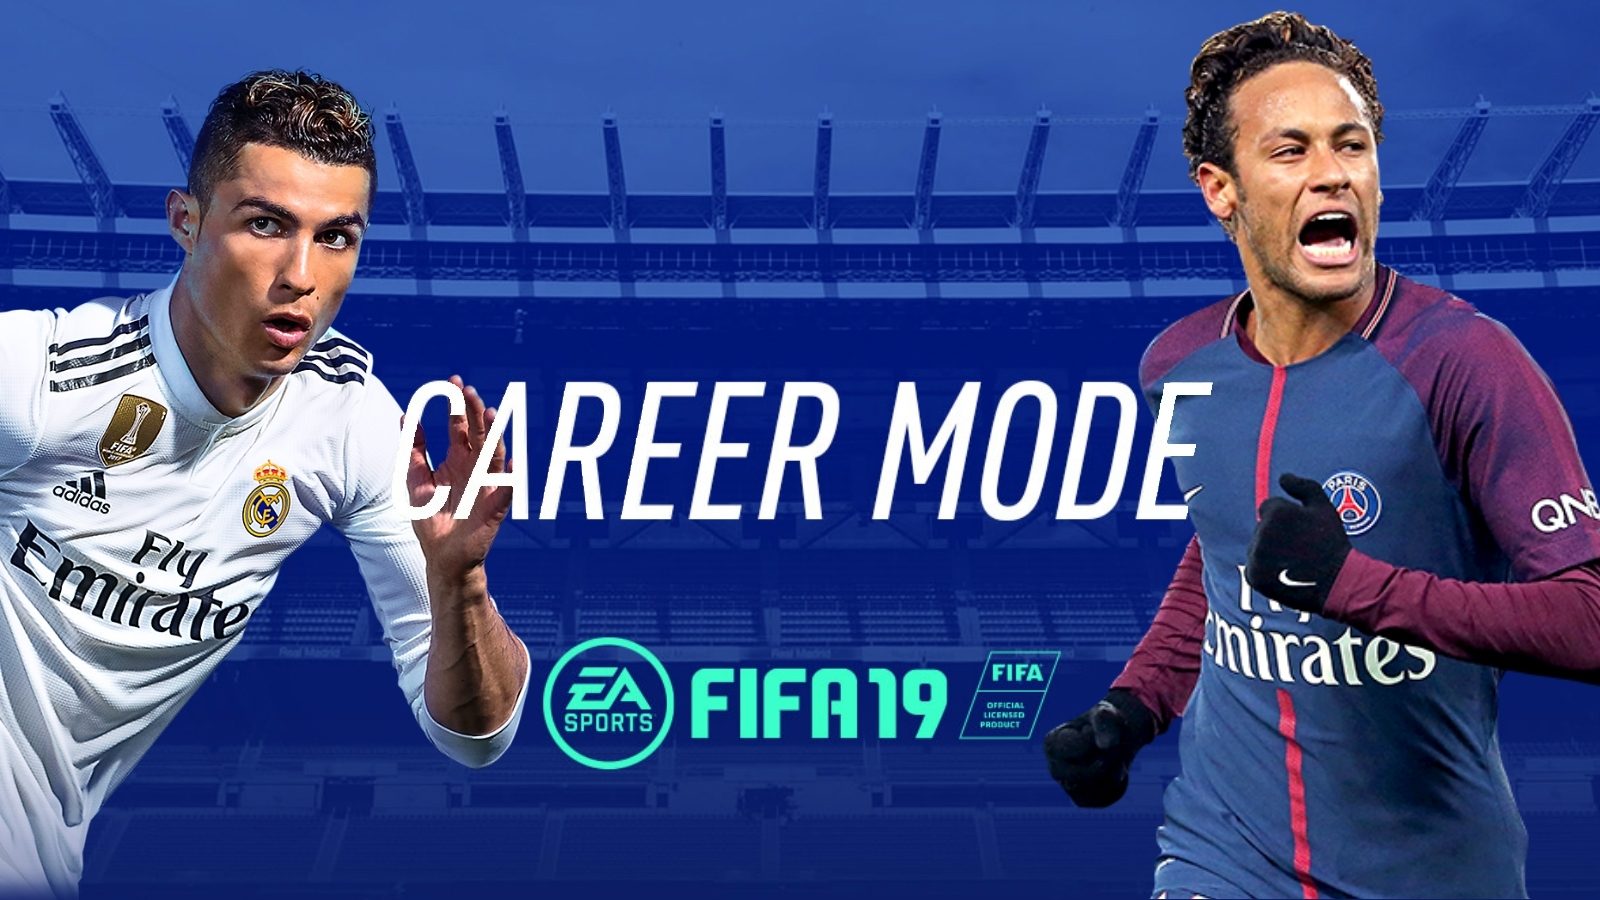 فیفا- الکترونیک آرتز- بازی فیفا ۱۹- کریر مود- FIFA 19 -Career Mode- EA Sports